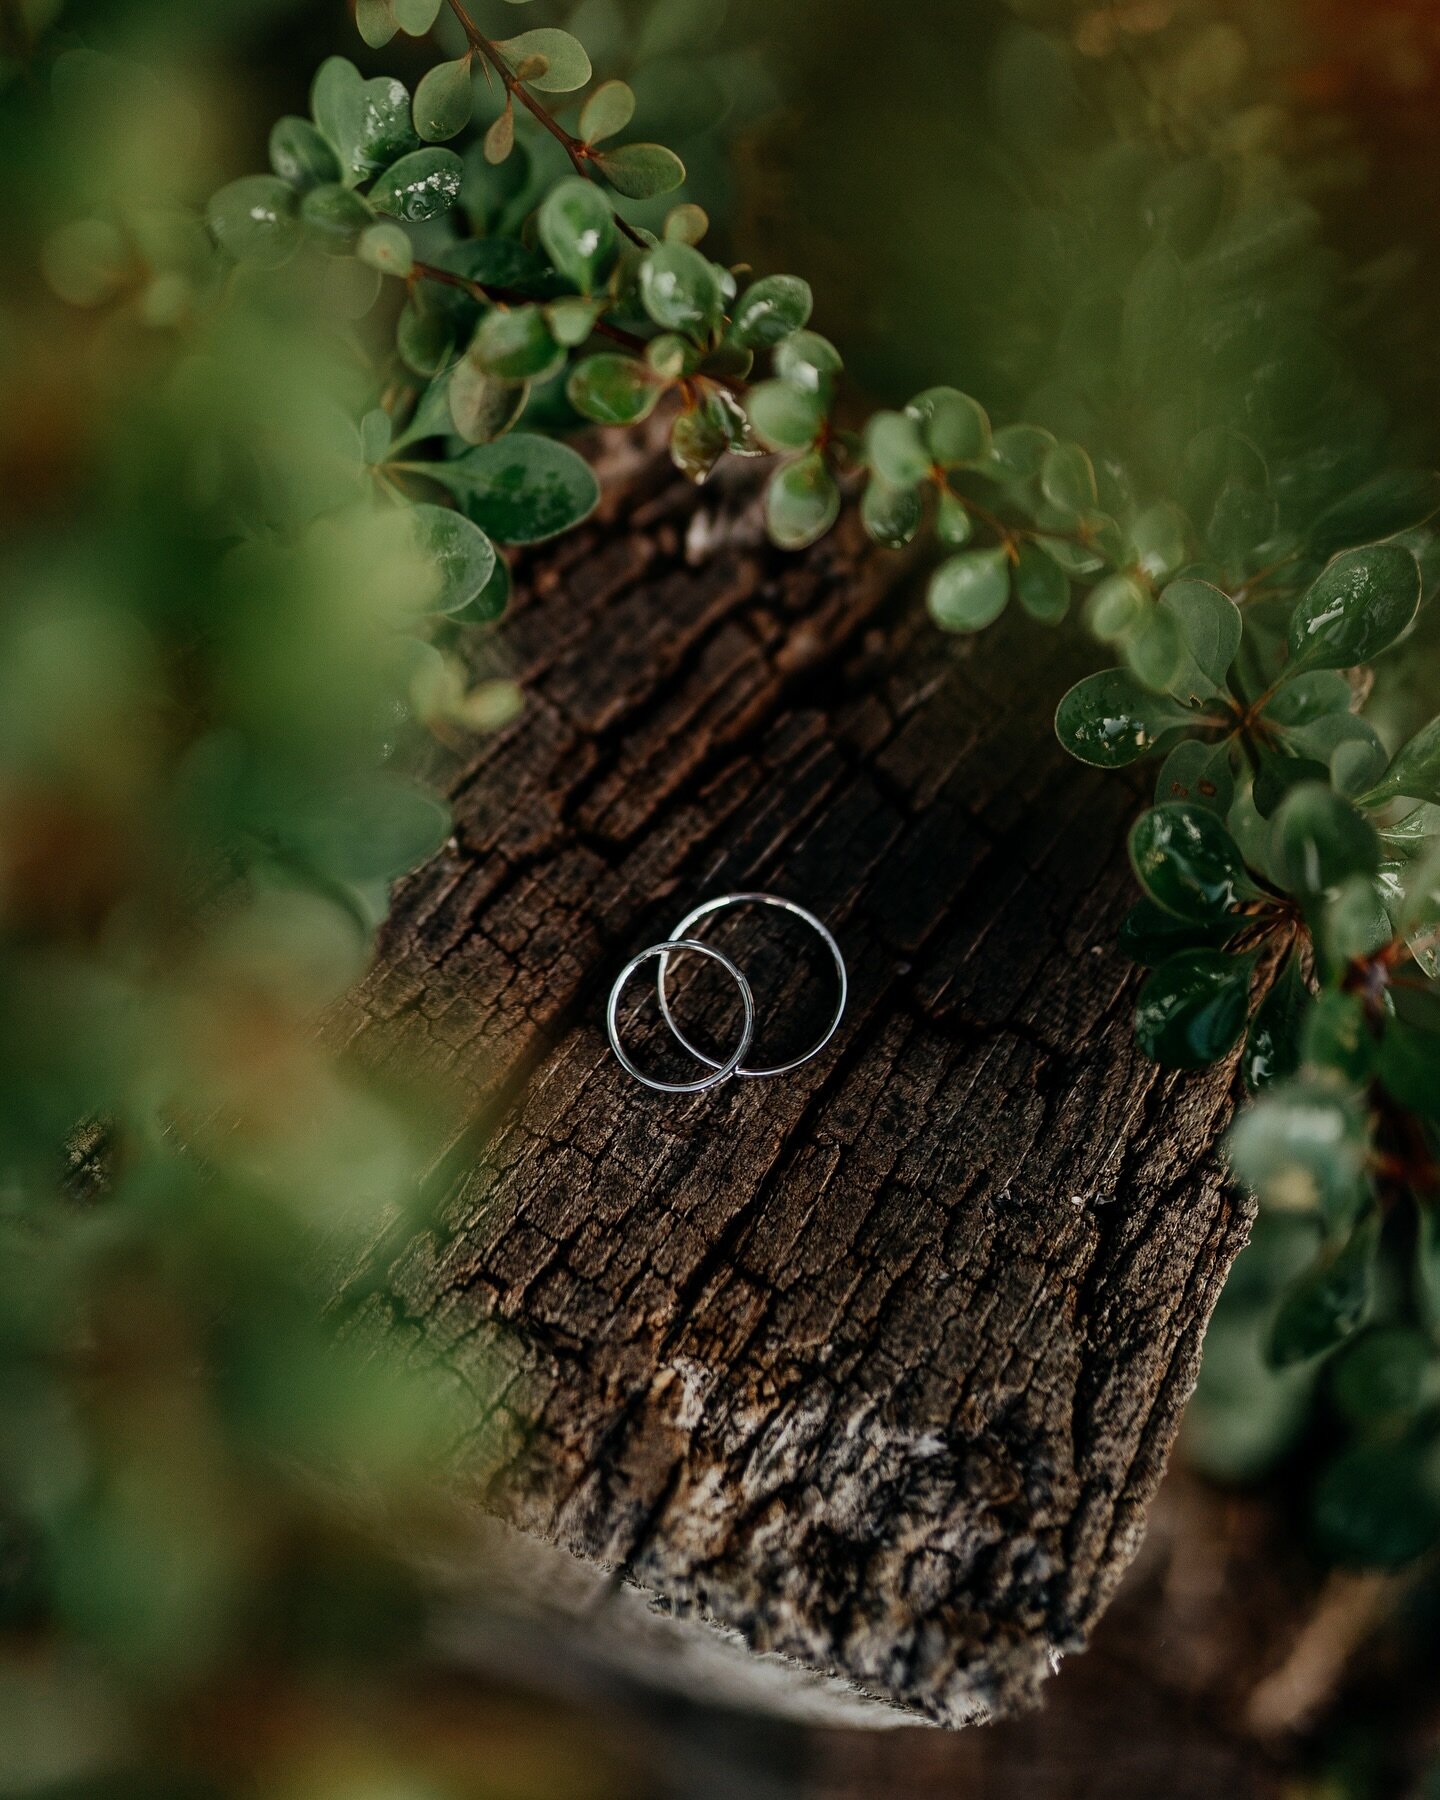 Prsteny jsou důležit&aacute; souč&aacute;st &amp; detail svatby💚 U těchto fotek se můžu projevit v kreativitě, zkou&scaron;&iacute;m je d&aacute;vat na různ&aacute; m&iacute;sta a fotit různ&yacute;mi způsoby😍💍 

#rings #wedding #sonyalpha #photog